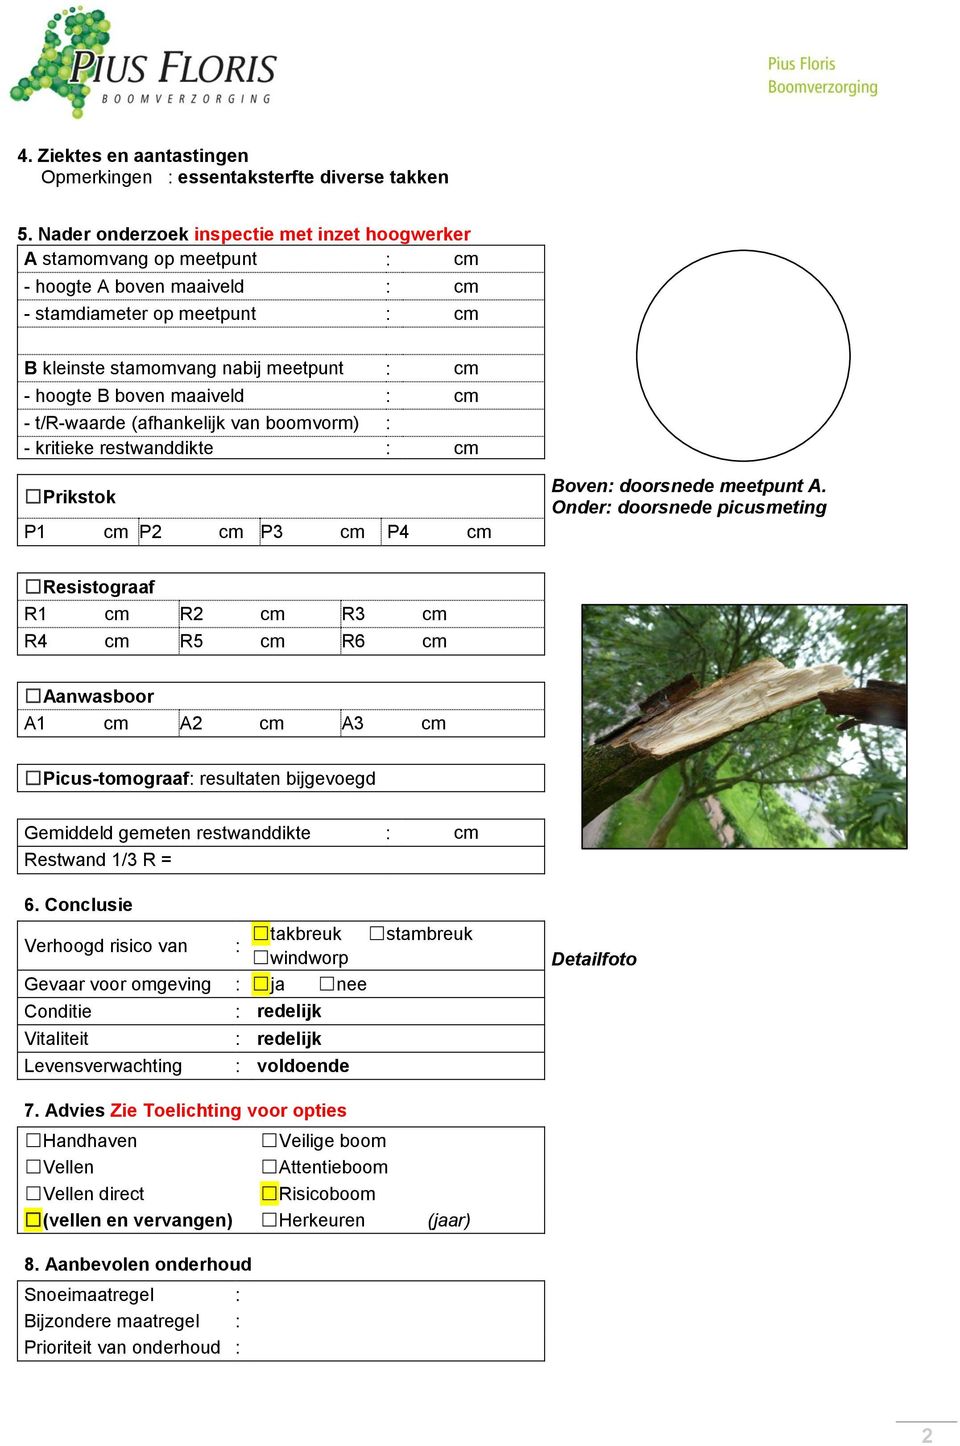 maaiveld : cm - t/r-waarde (afhankelijk van boomvorm) : - kritieke restwanddikte : cm Prikstok P1 cm P2 cm P3 cm P4 cm Boven: doorsnede meetpunt A.